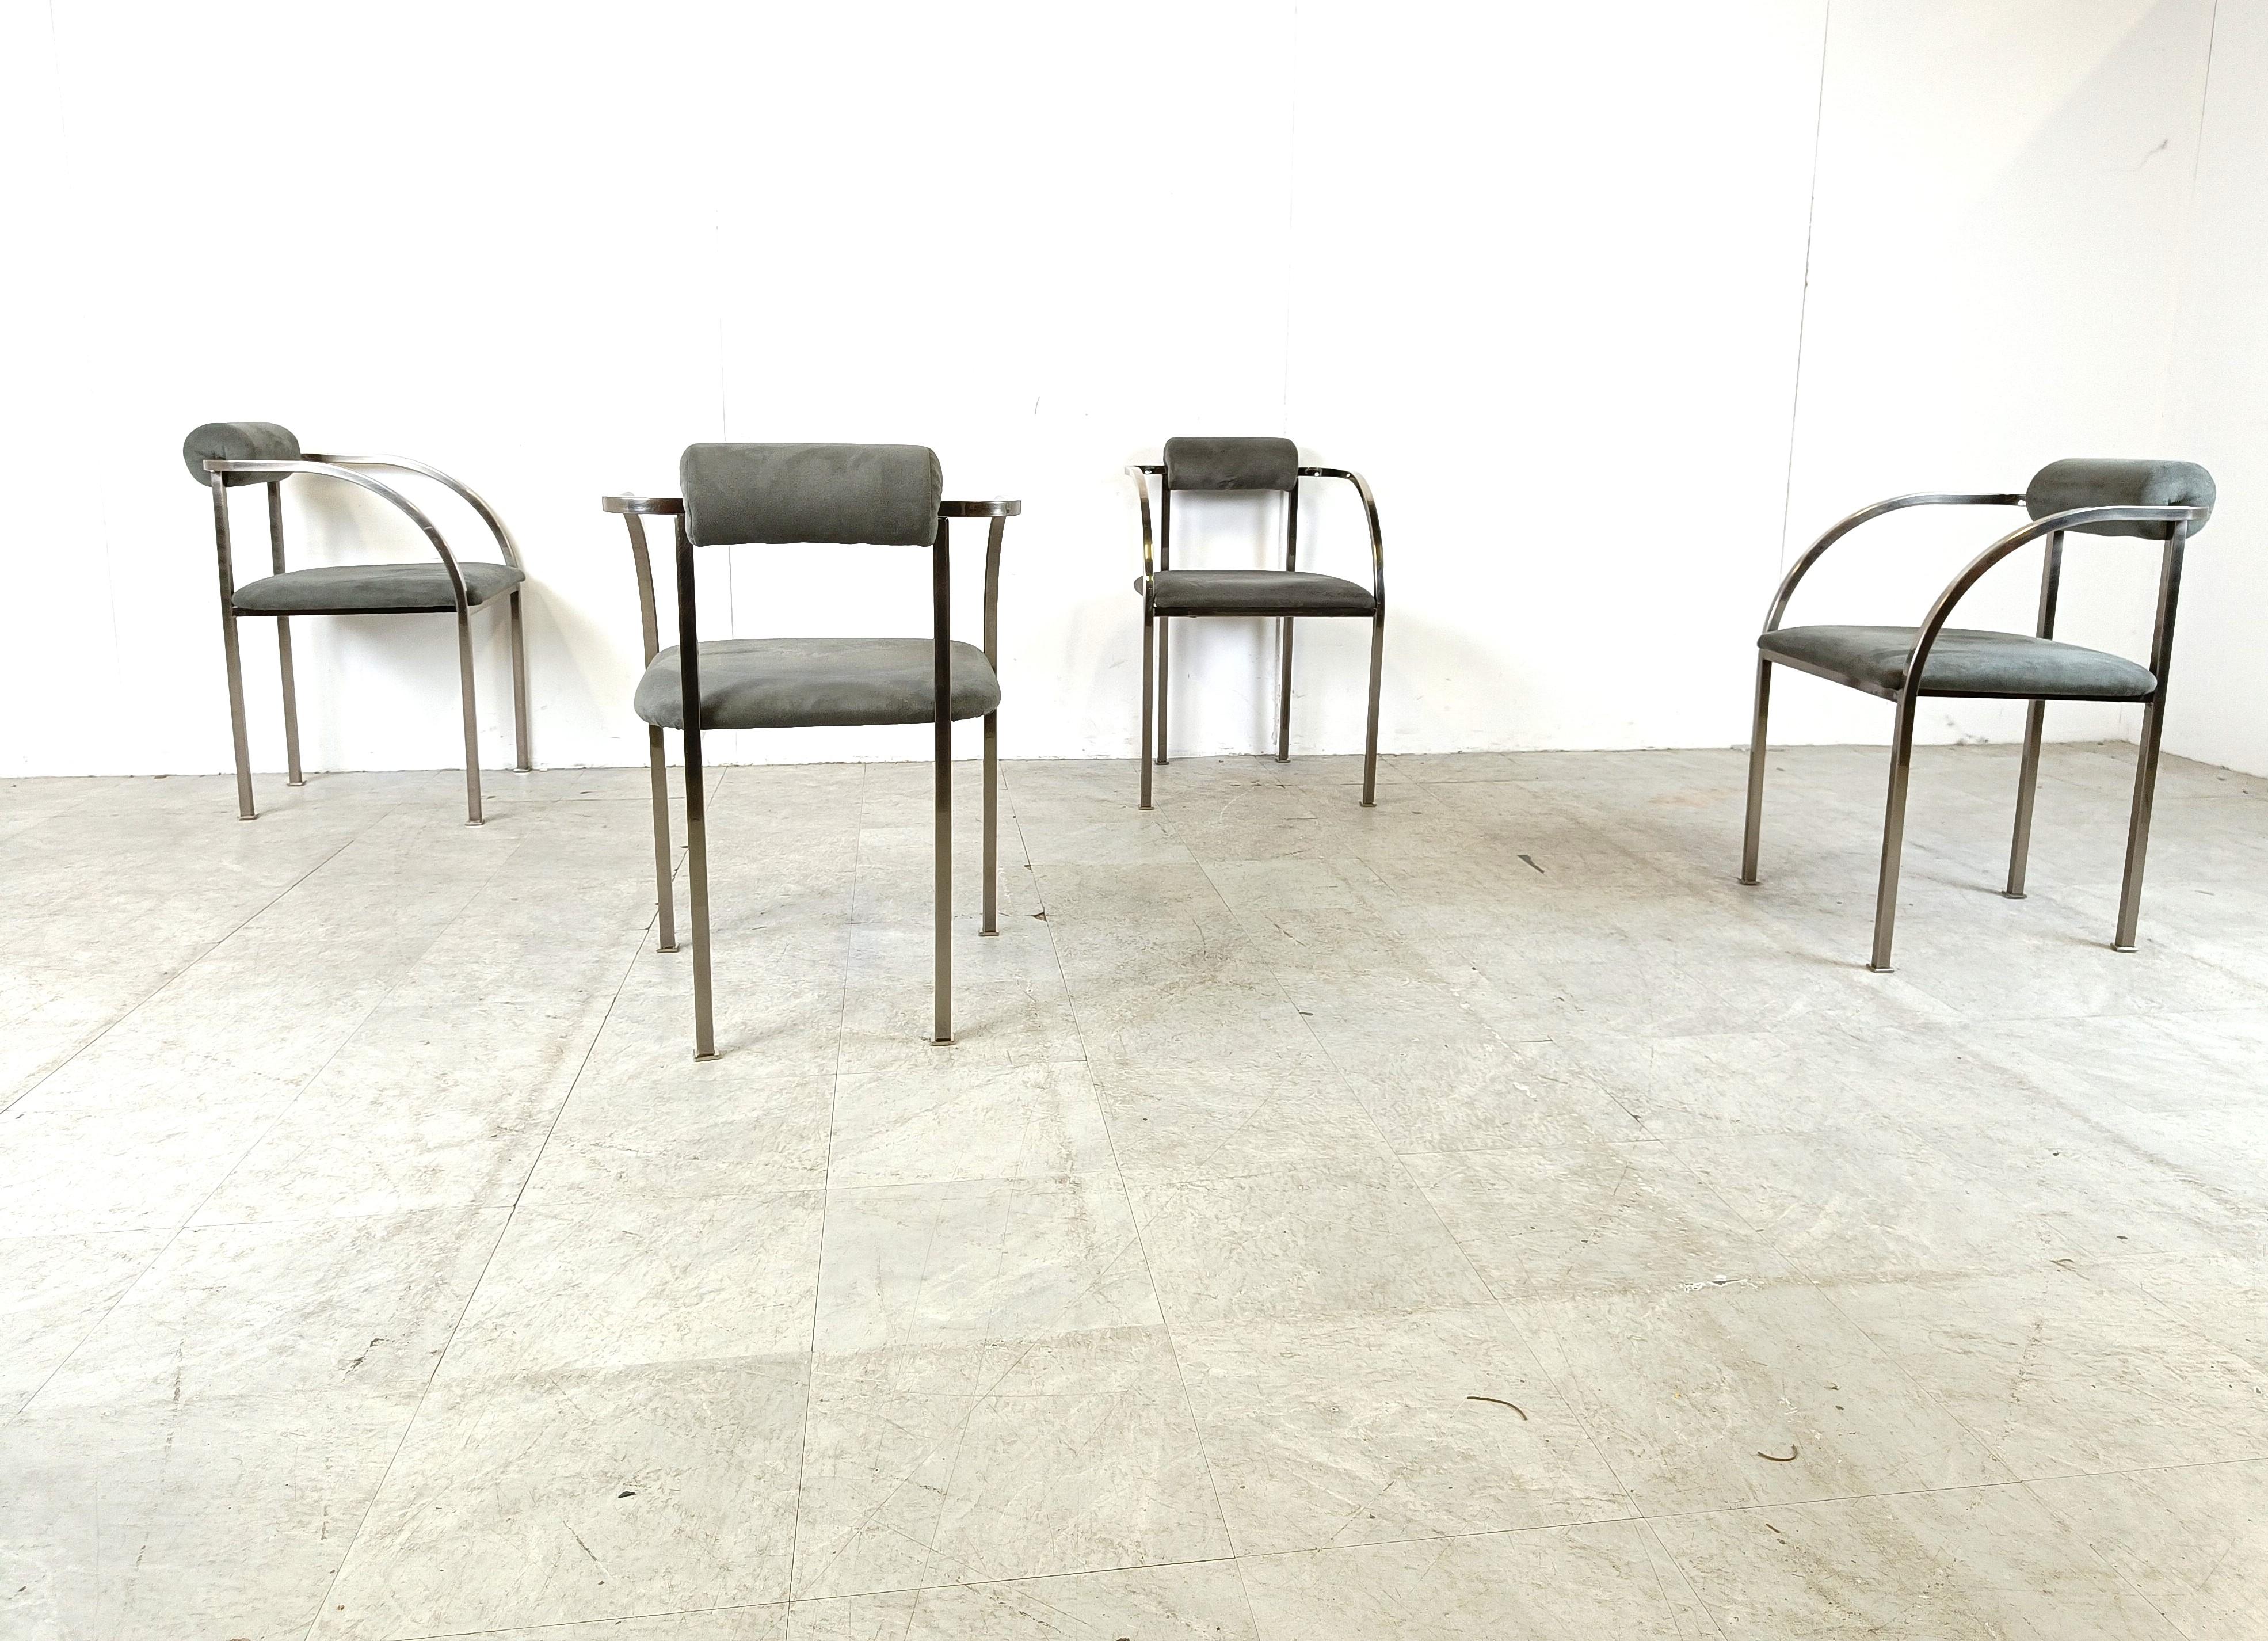 Ensemble de quatre élégantes chaises de salle à manger post-moderne fabriquées par Belgochrom.

Cadres métalliques joliment conçus avec des pieds élégants. Rembourré en daim gris.

Belgochrom produisait des meubles haut de gamme et constituait, avec